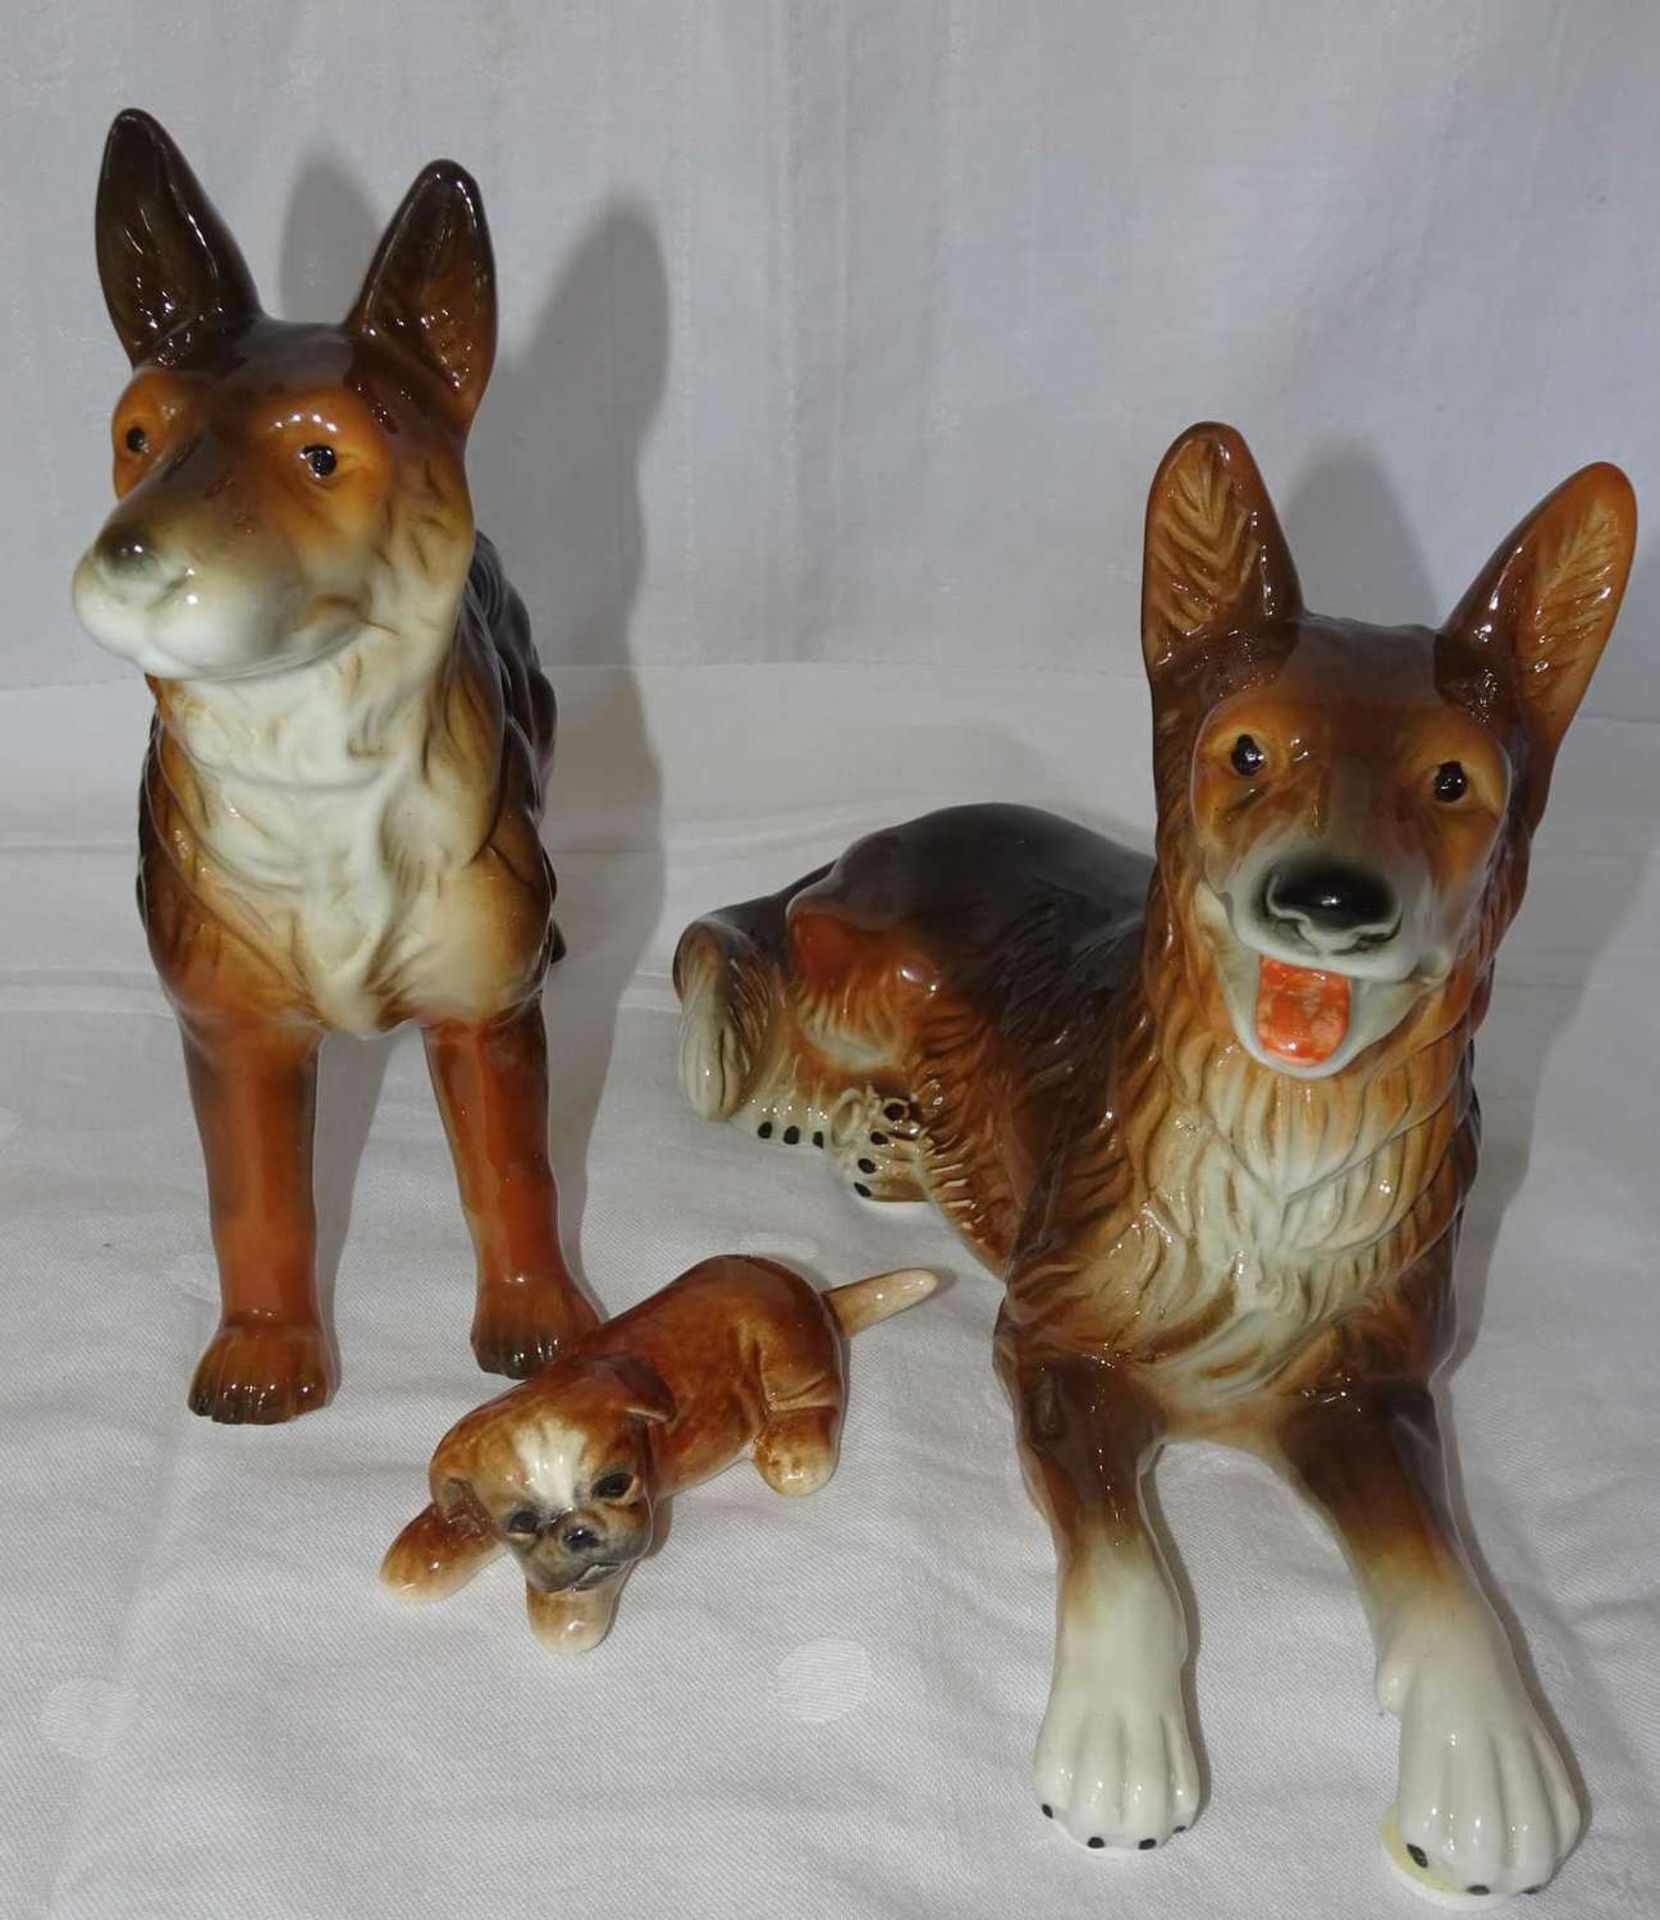 Lot Porzellanfiguren "Hunde", insgesamt 3 Stück. Verschiedene Modelle. Alle 3 Figuren gemarkt. Guter